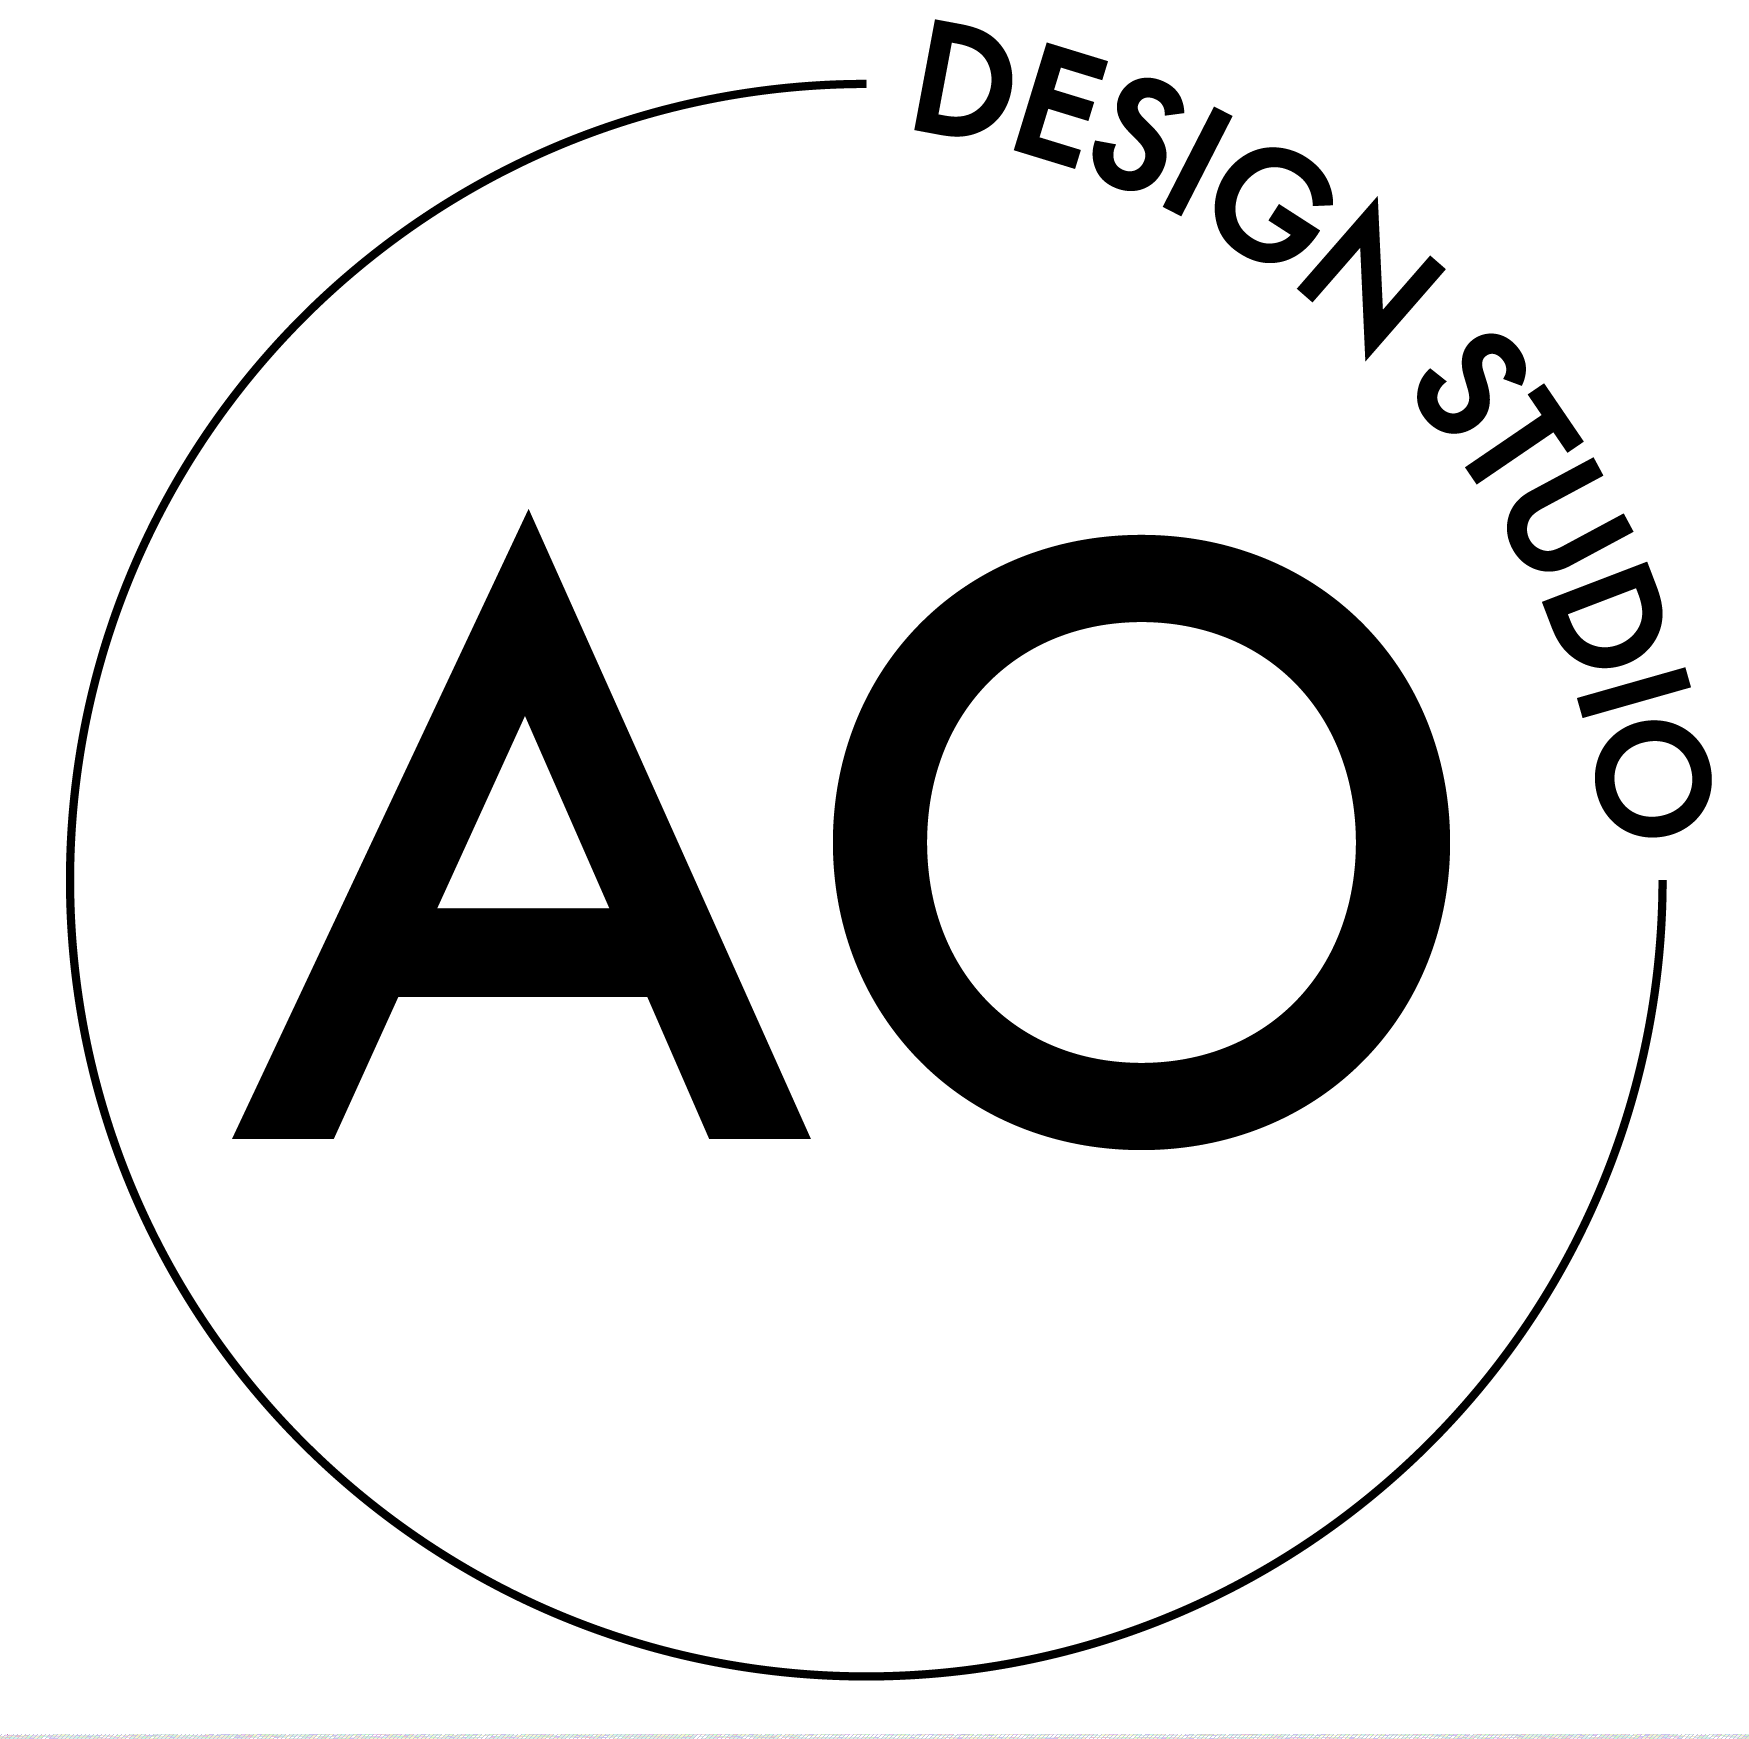 AO DESIGN STUDIO